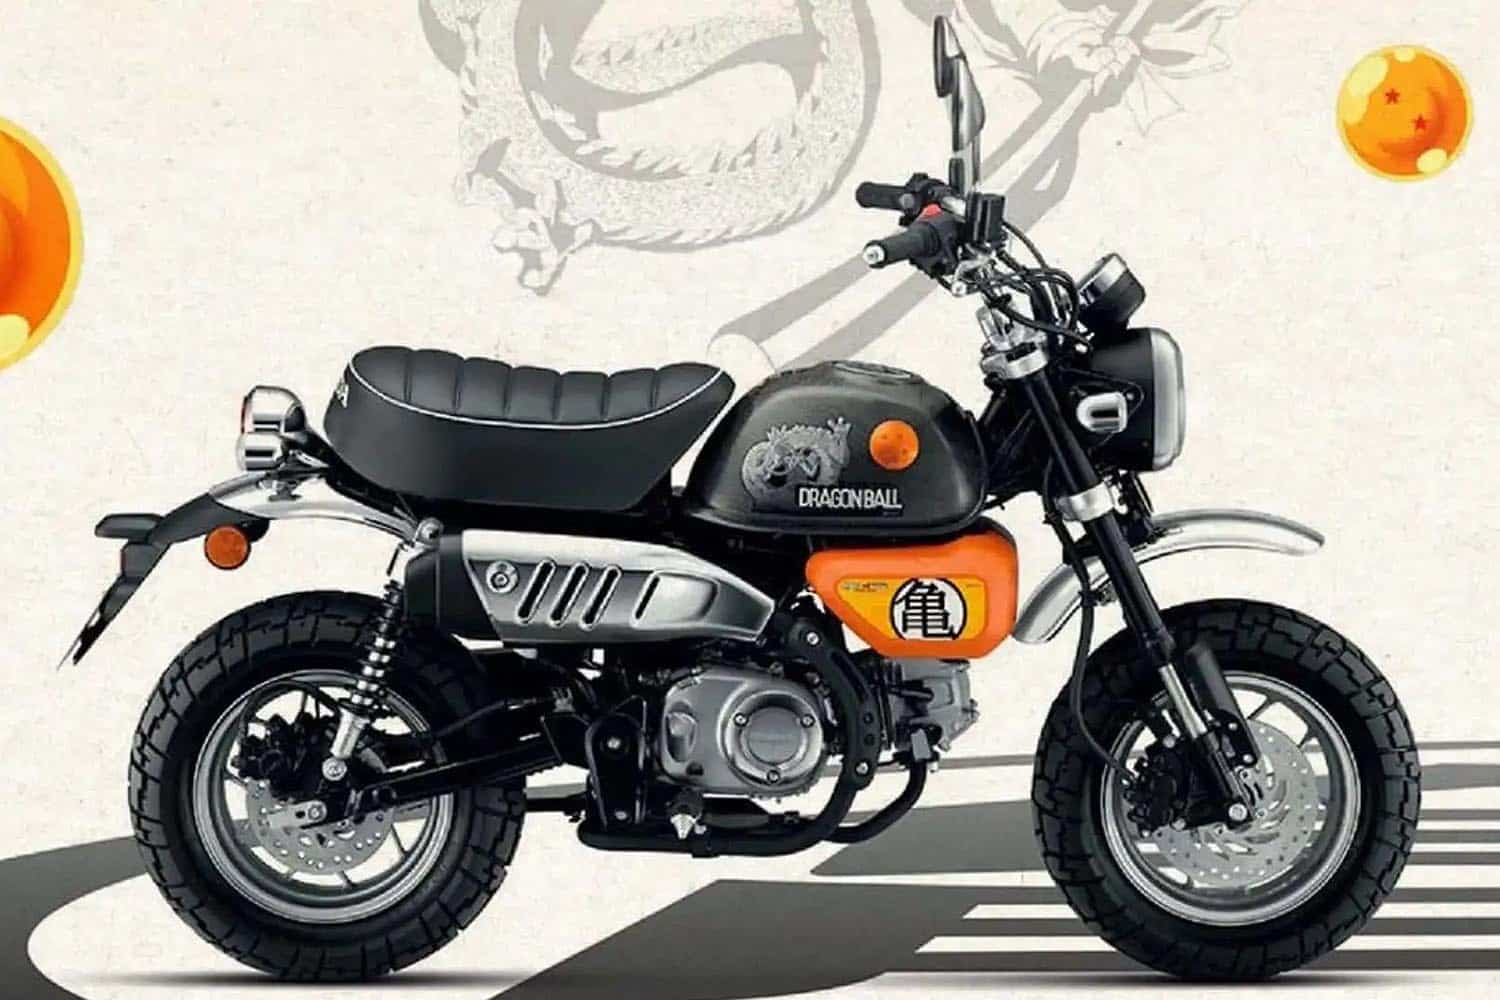 La Honda Monkey Dragon Ball es única en todo el mundo